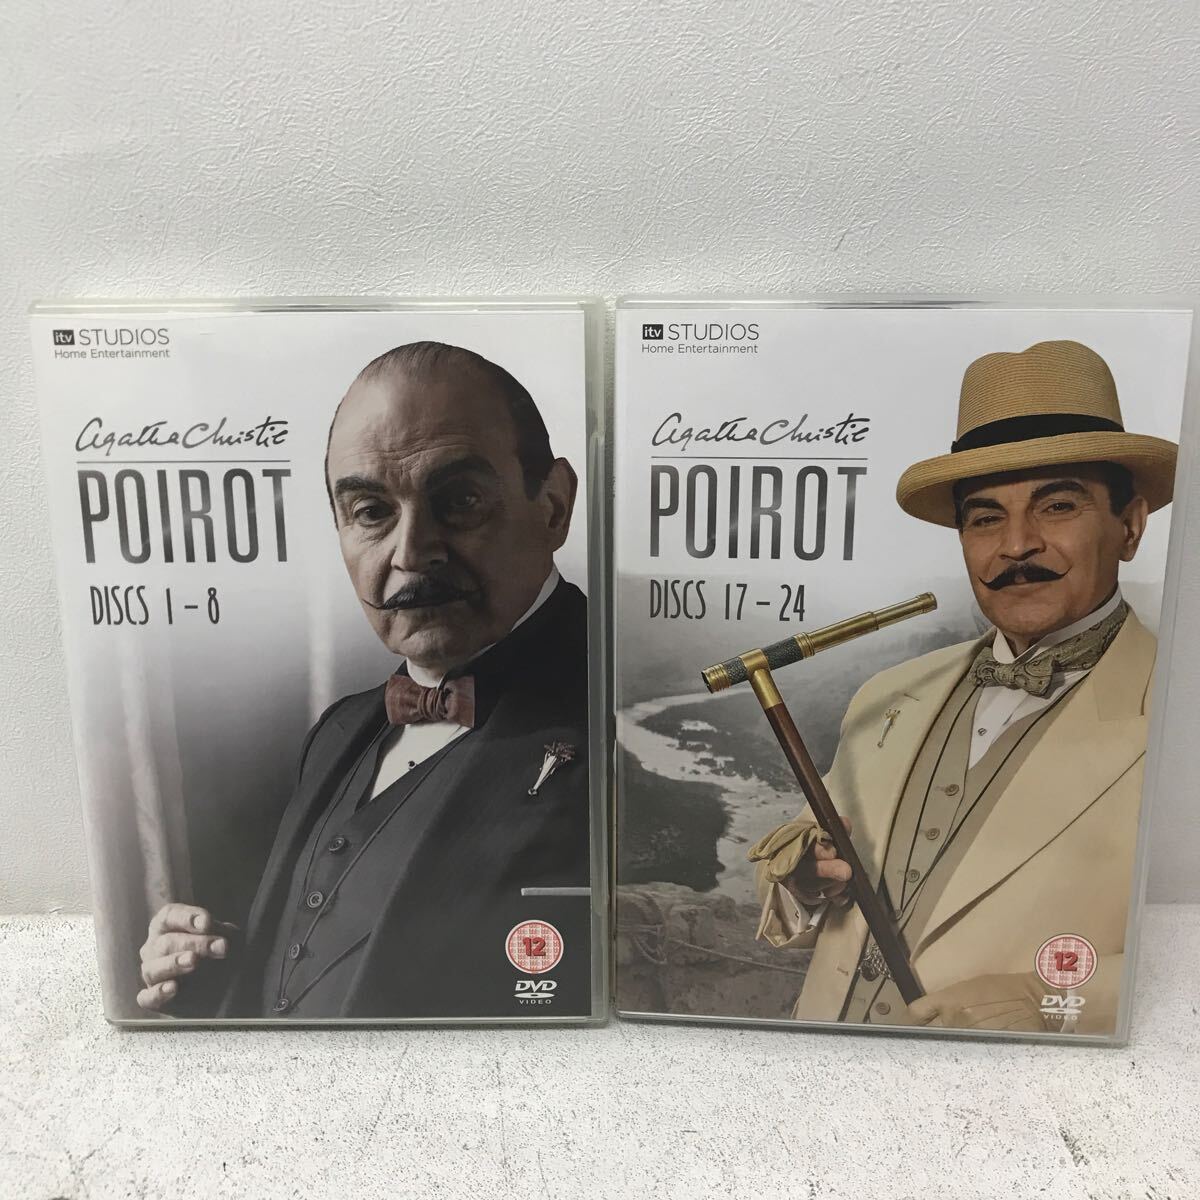 I0322E3 名探偵ポアロ Poirot コンプリートコレクション DVDBOX 61エピソード 輸入盤 国内再生不可 海外ドラマ THE COMPLETE COLLECTION_画像5